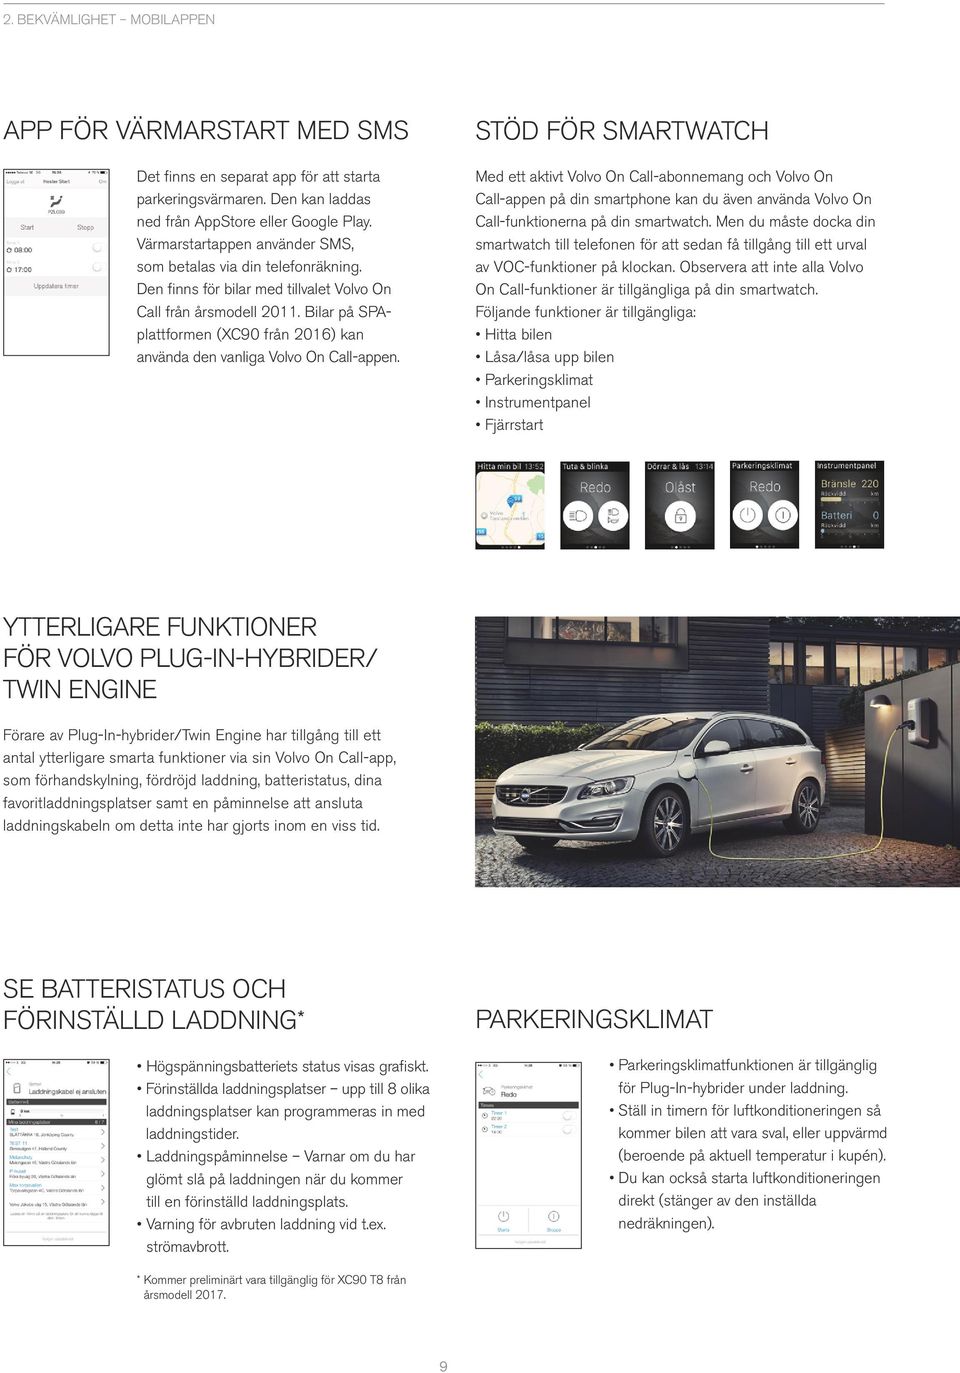 Bilar på SPAplattformen (XC90 från 2016) kan använda den vanliga Volvo On Call-appen.